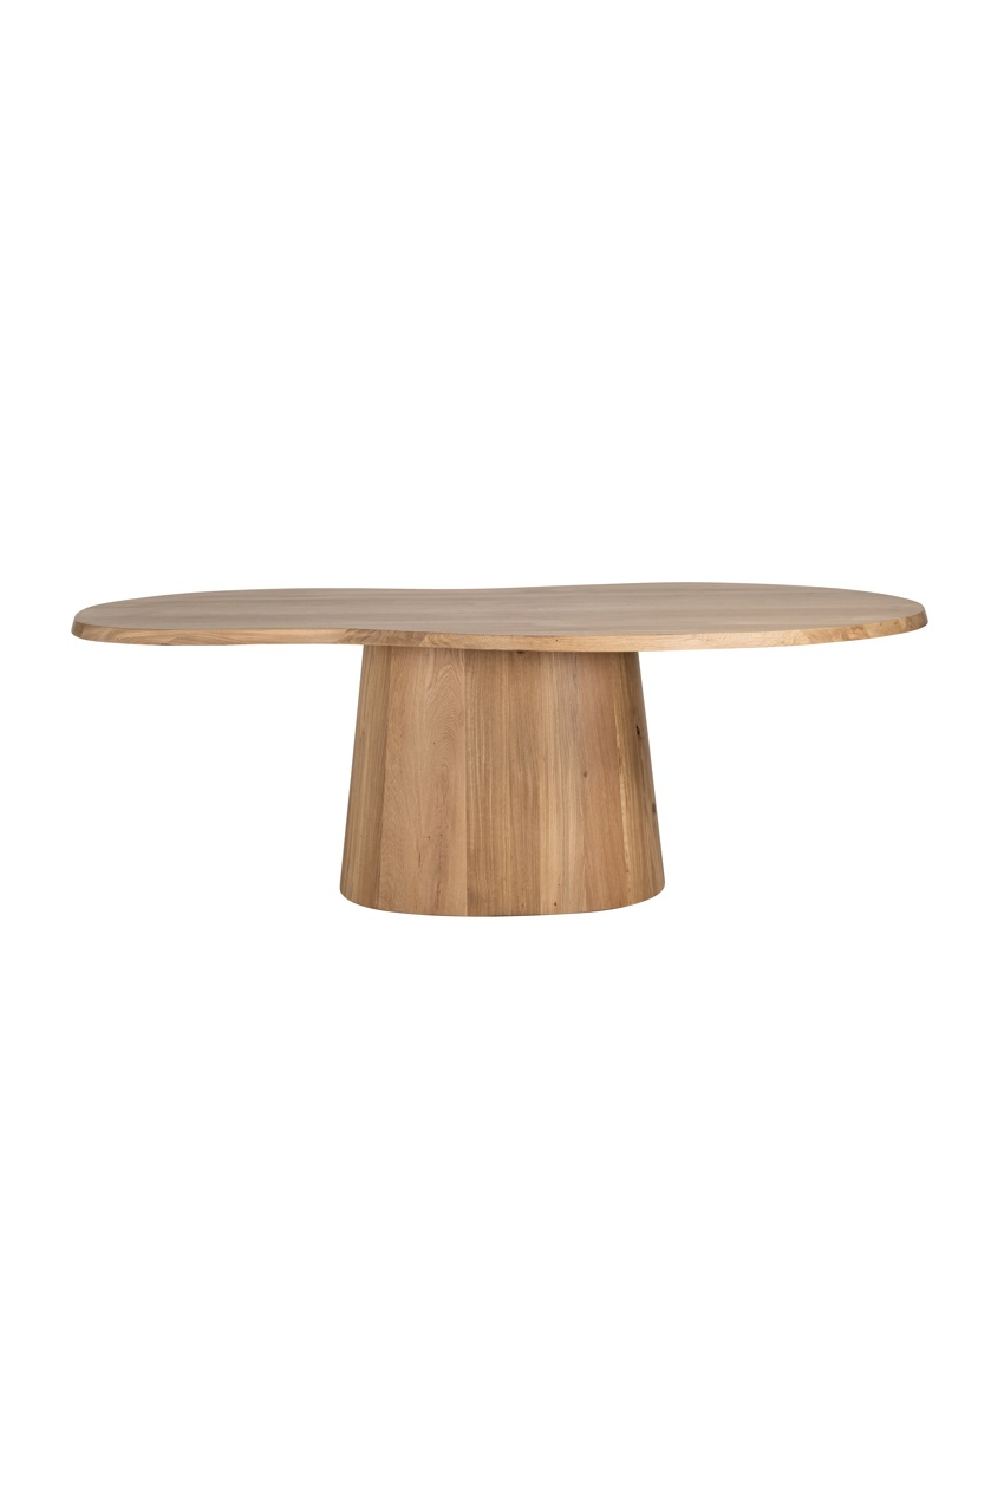 Oak Organic-Shaped Dining Table | OROA Riva | Oroa.com